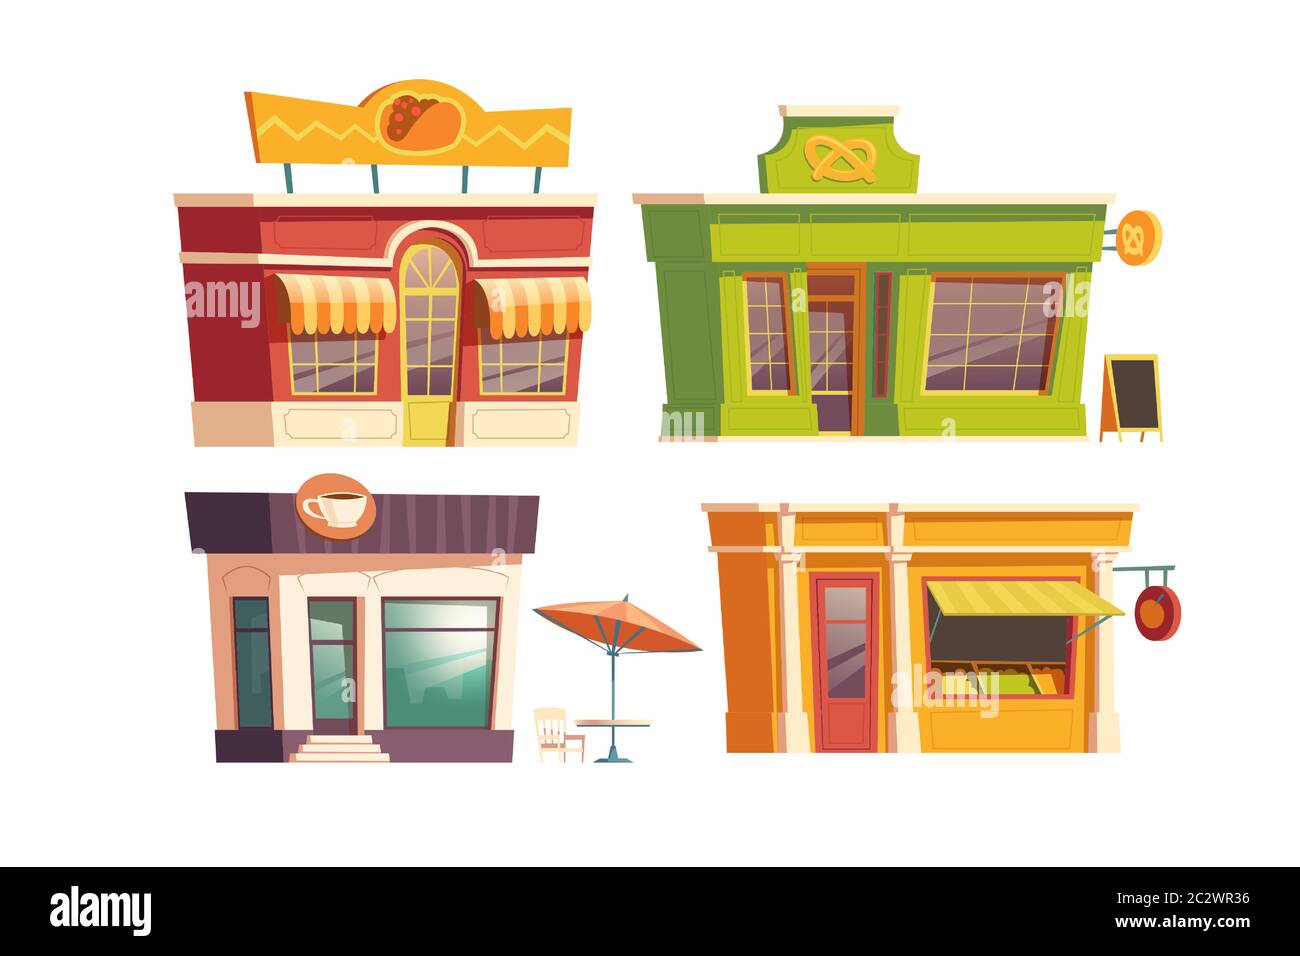 Fast Food Restaurant Gebäude Cartoon Vektor Illustration. Fassaden von Lebensmittelgeschäften und Cafés oder Bistros mit Schildern von Kaffee, Brezel, Tacos. Stadt Stock Vektor